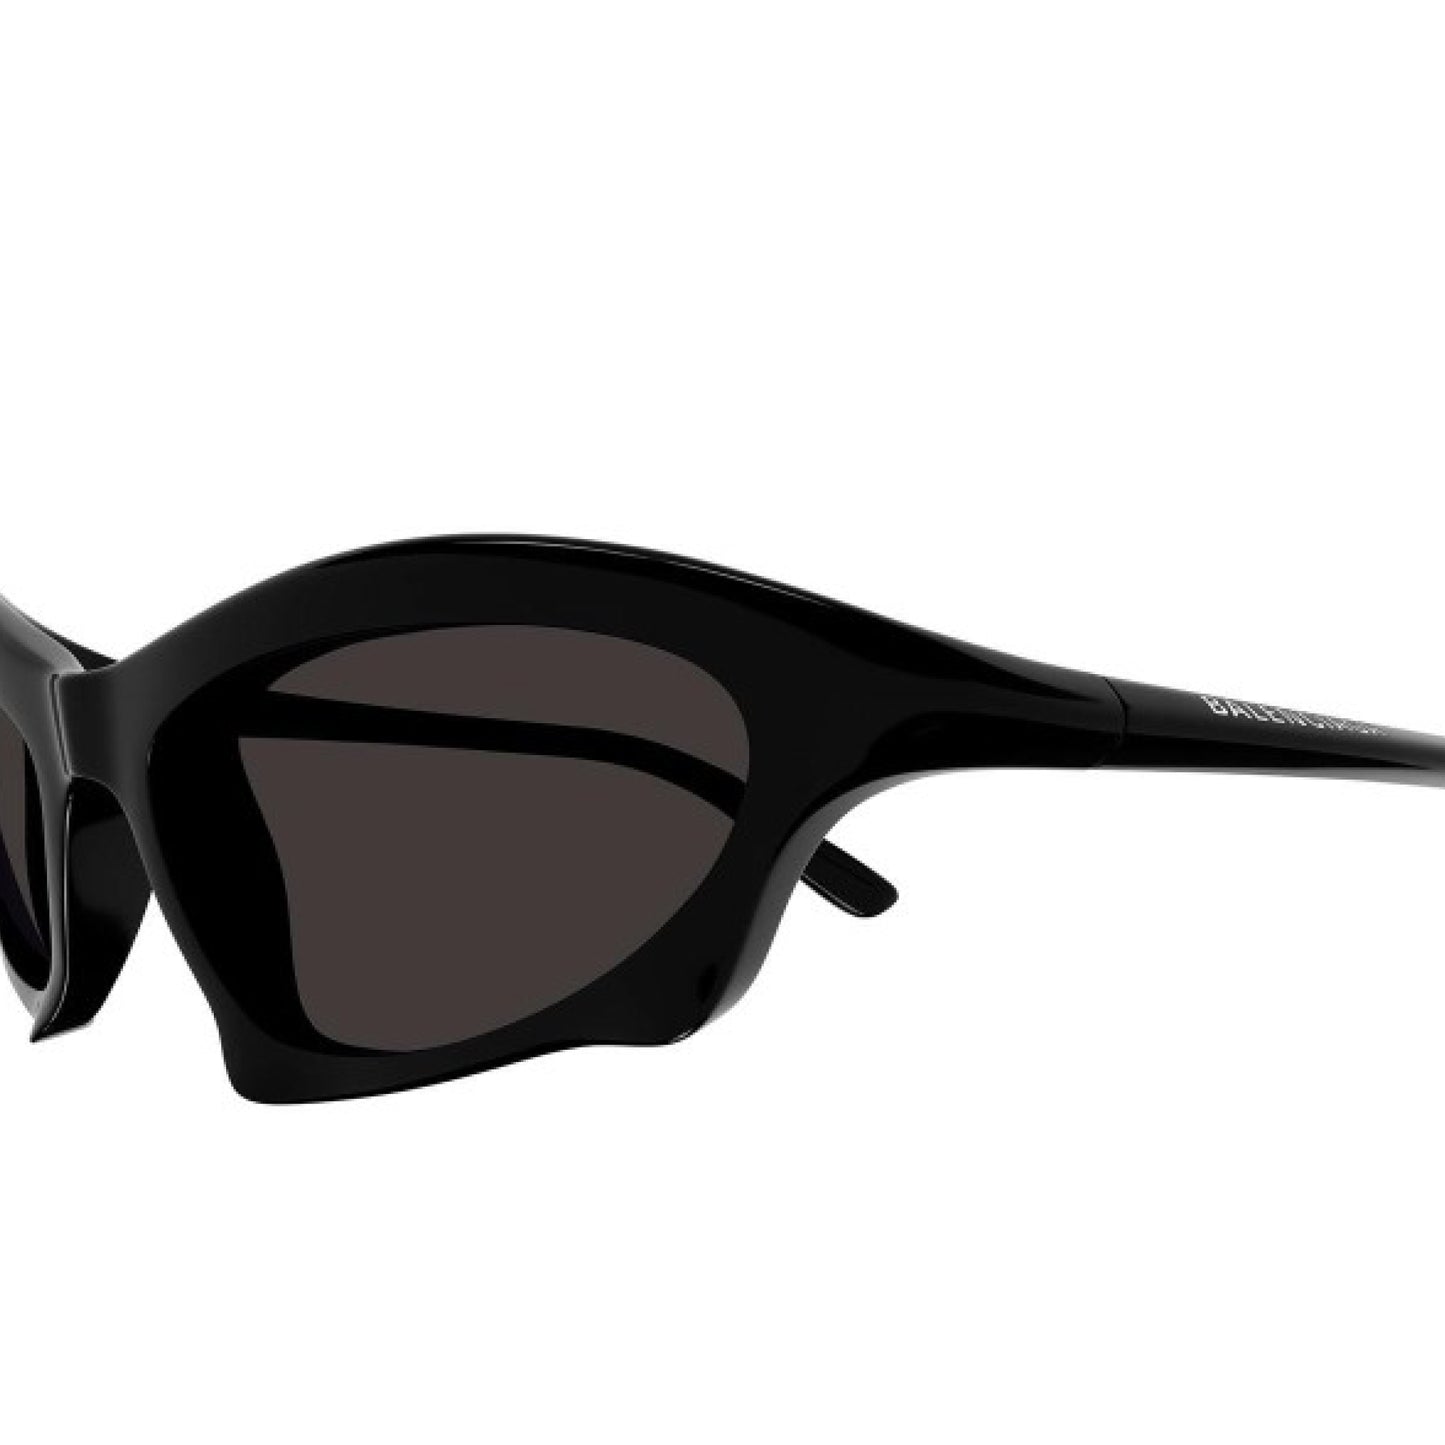 Balenciaga Bat Rectangle Sunglasses Black Balenciaga